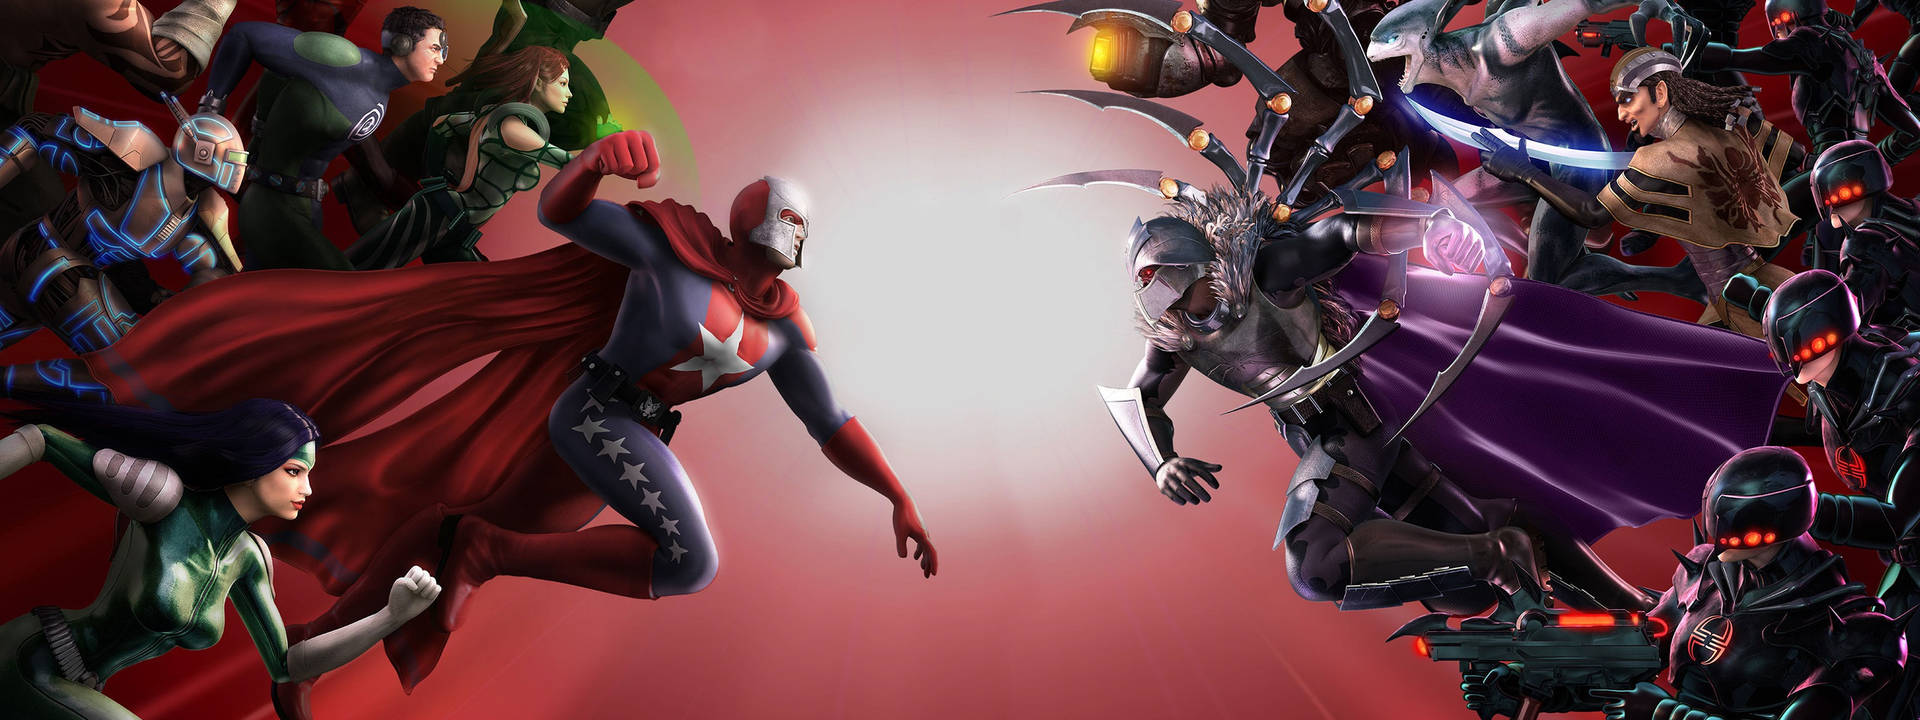 Einegruppe Von Superhelden Kämpft Auf Einem Roten Hintergrund. Wallpaper